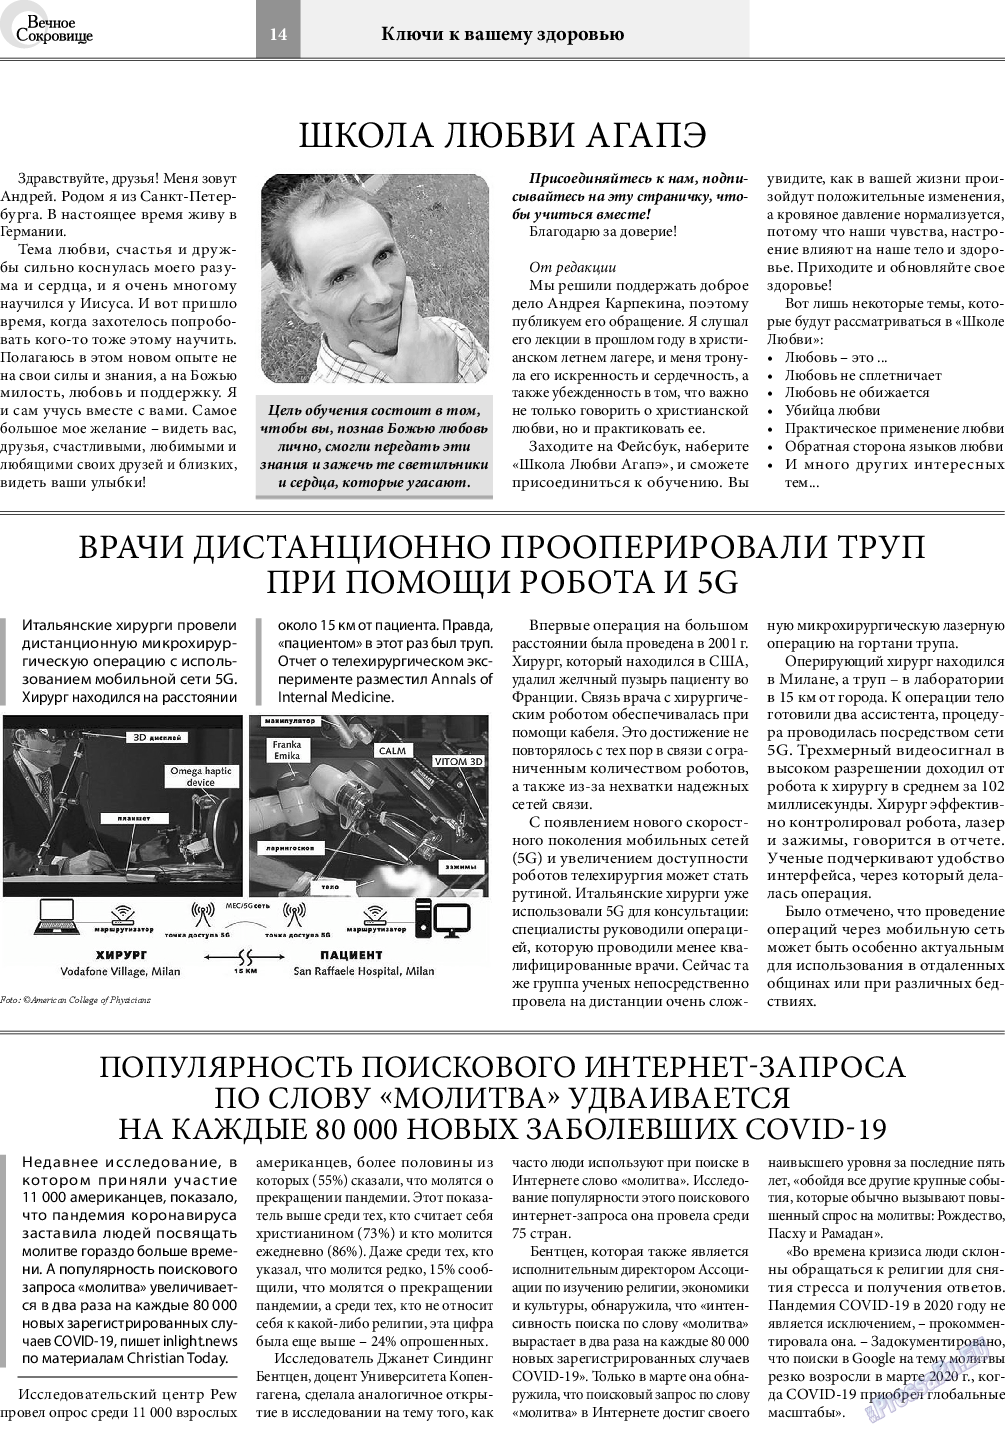 Вечное сокровище, газета. 2020 №5 стр.14